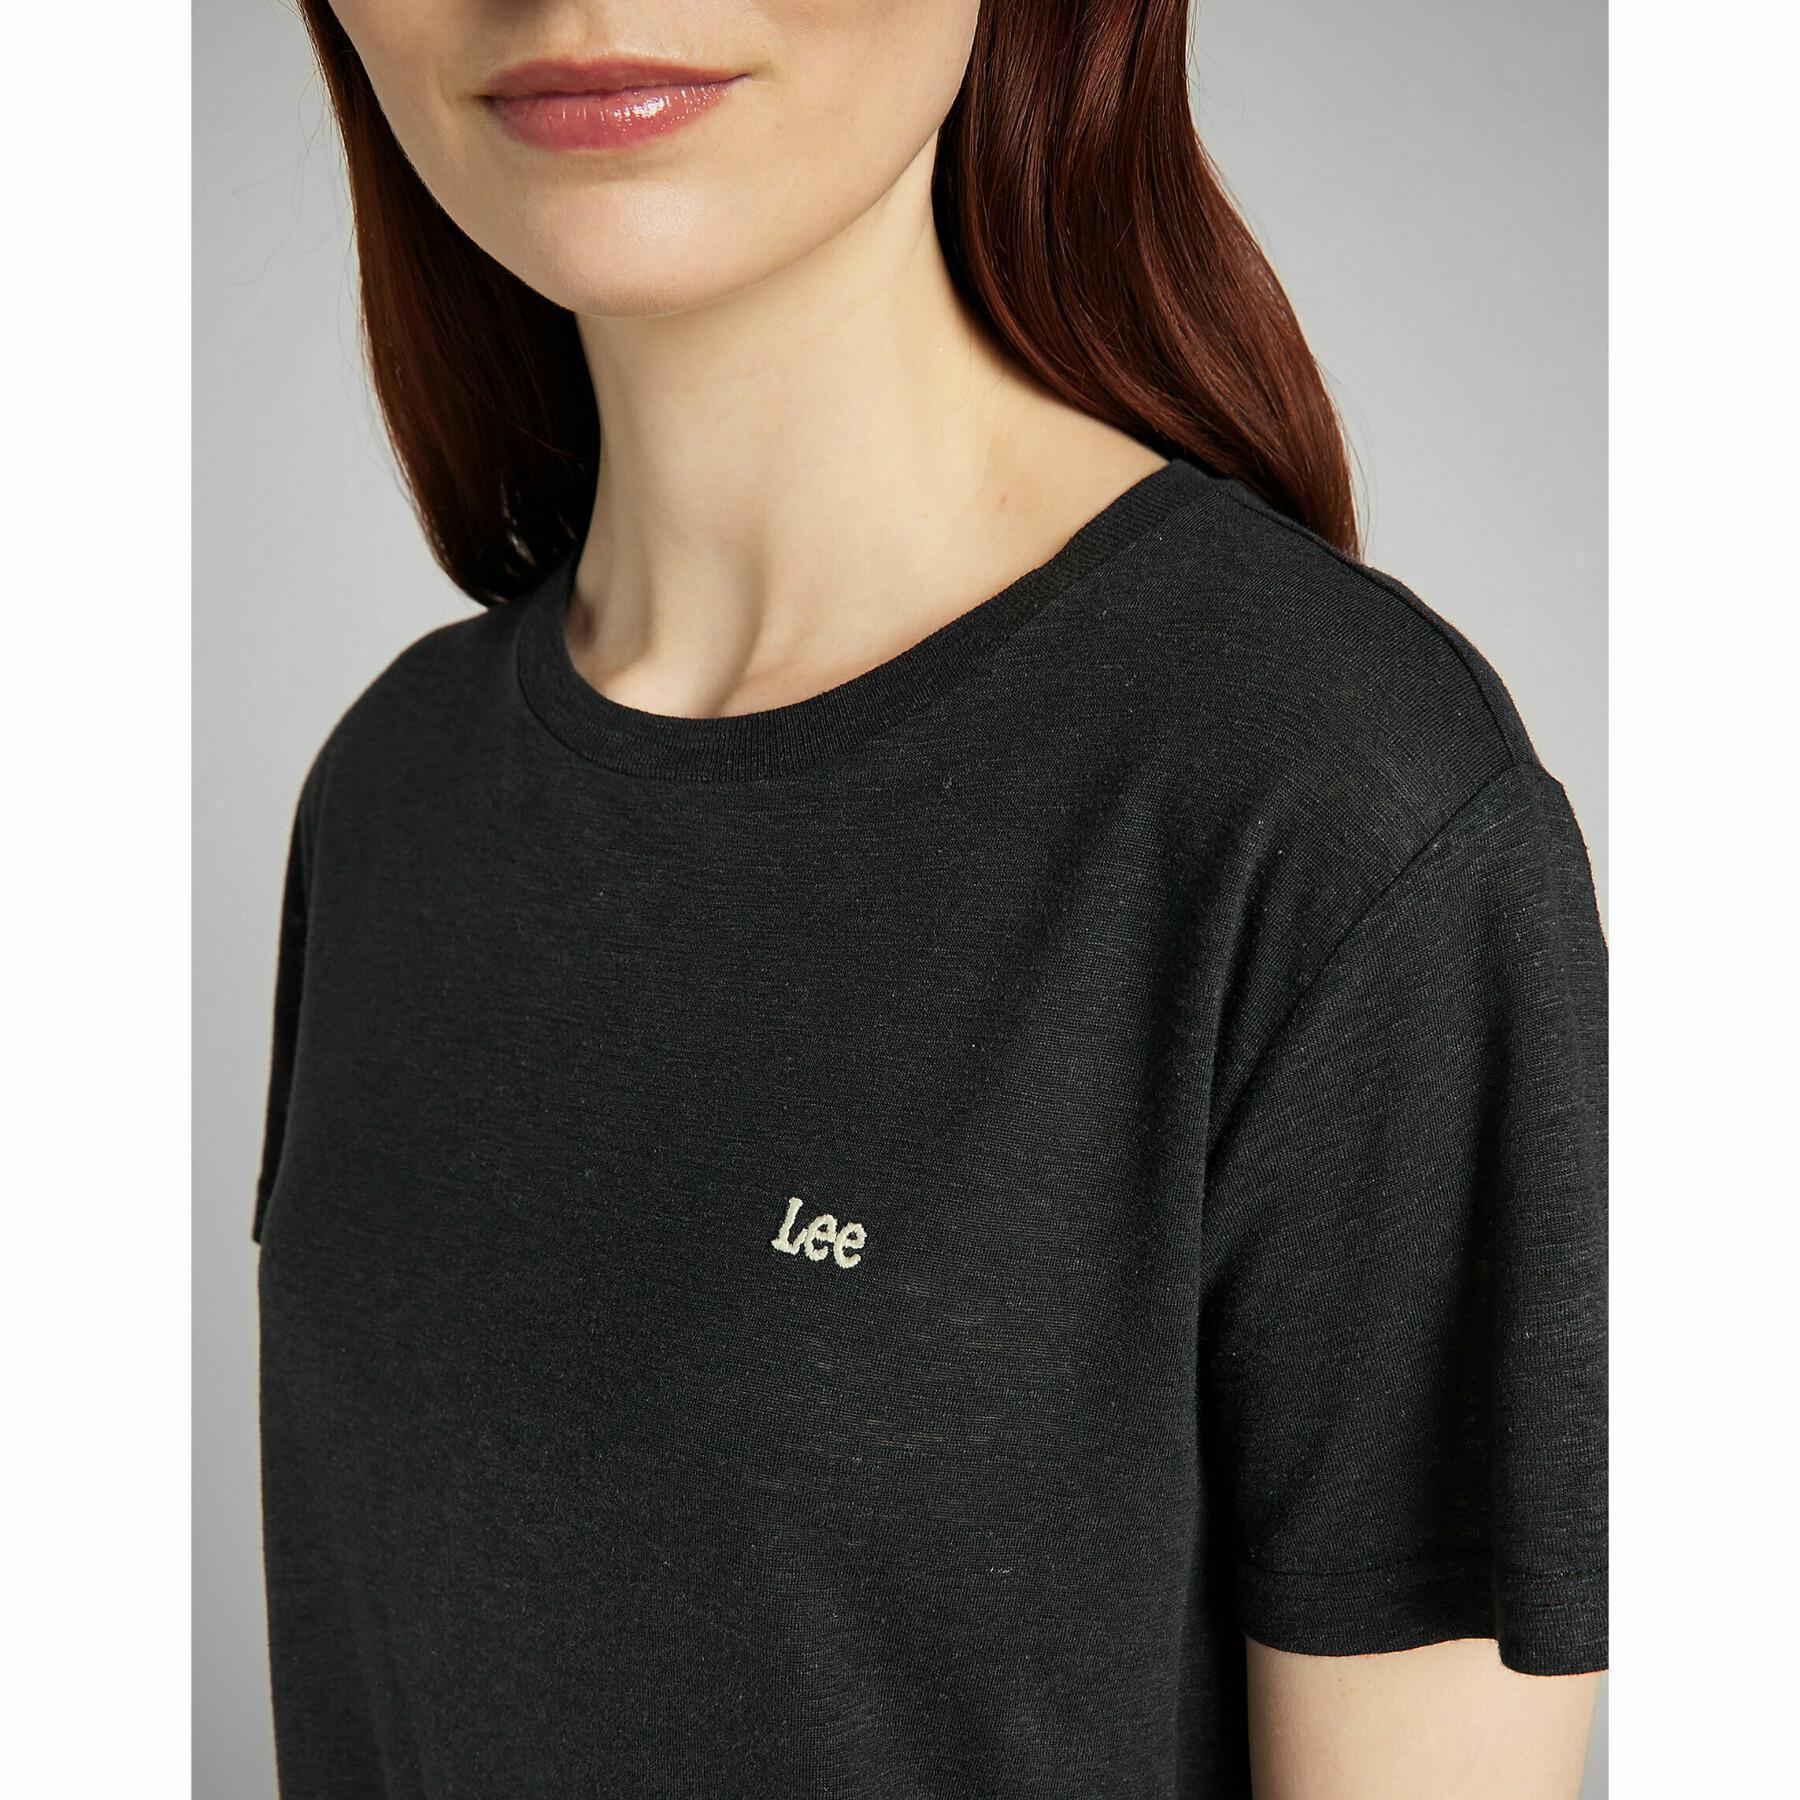 Camiseta feminina Lee Crew